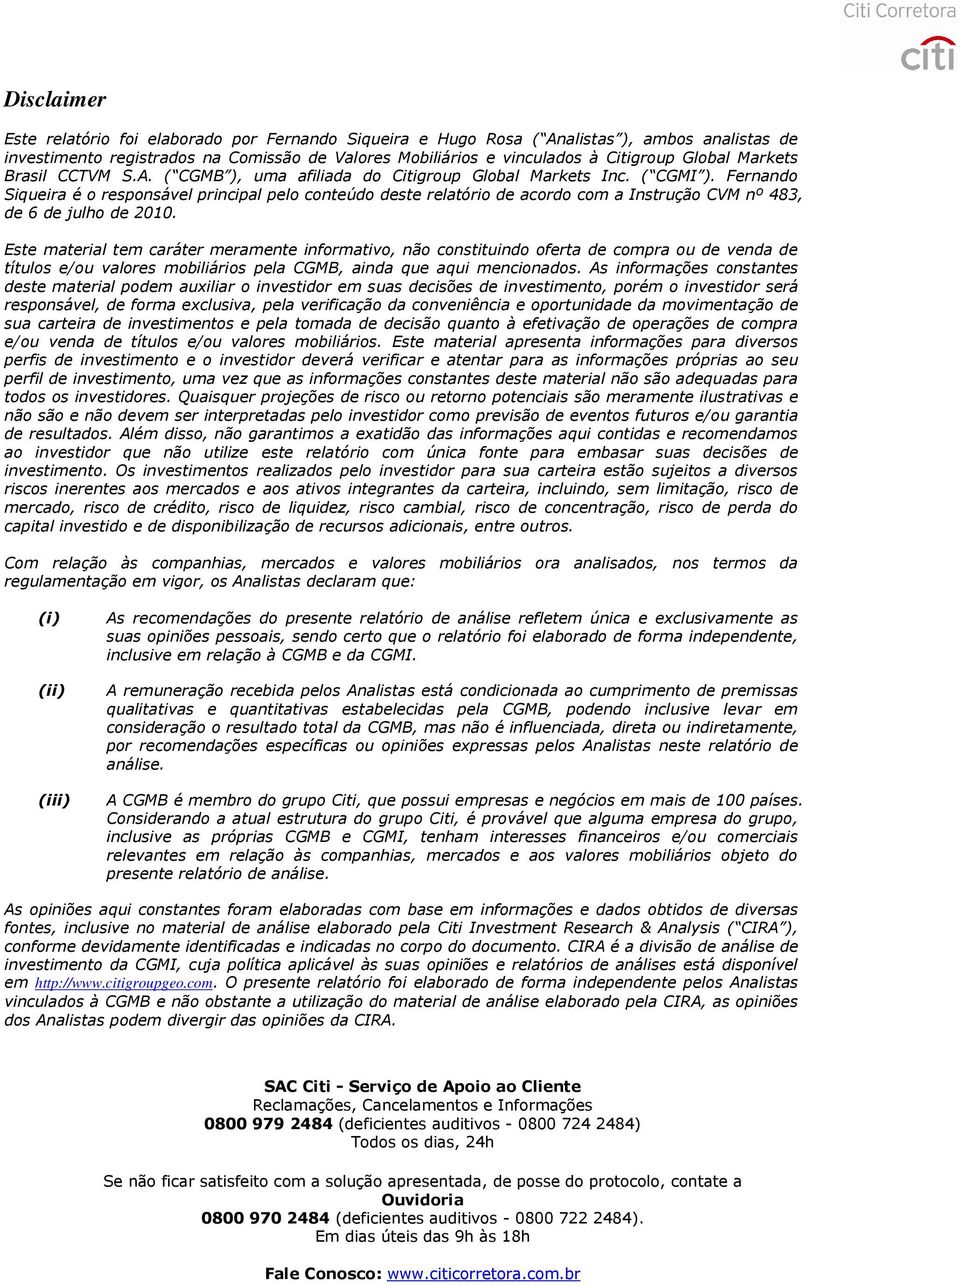 Fernando Siqueira é o responsável principal pelo conteúdo deste relatório de acordo com a Instrução CVM nº 483, de 6 de julho de 2010.